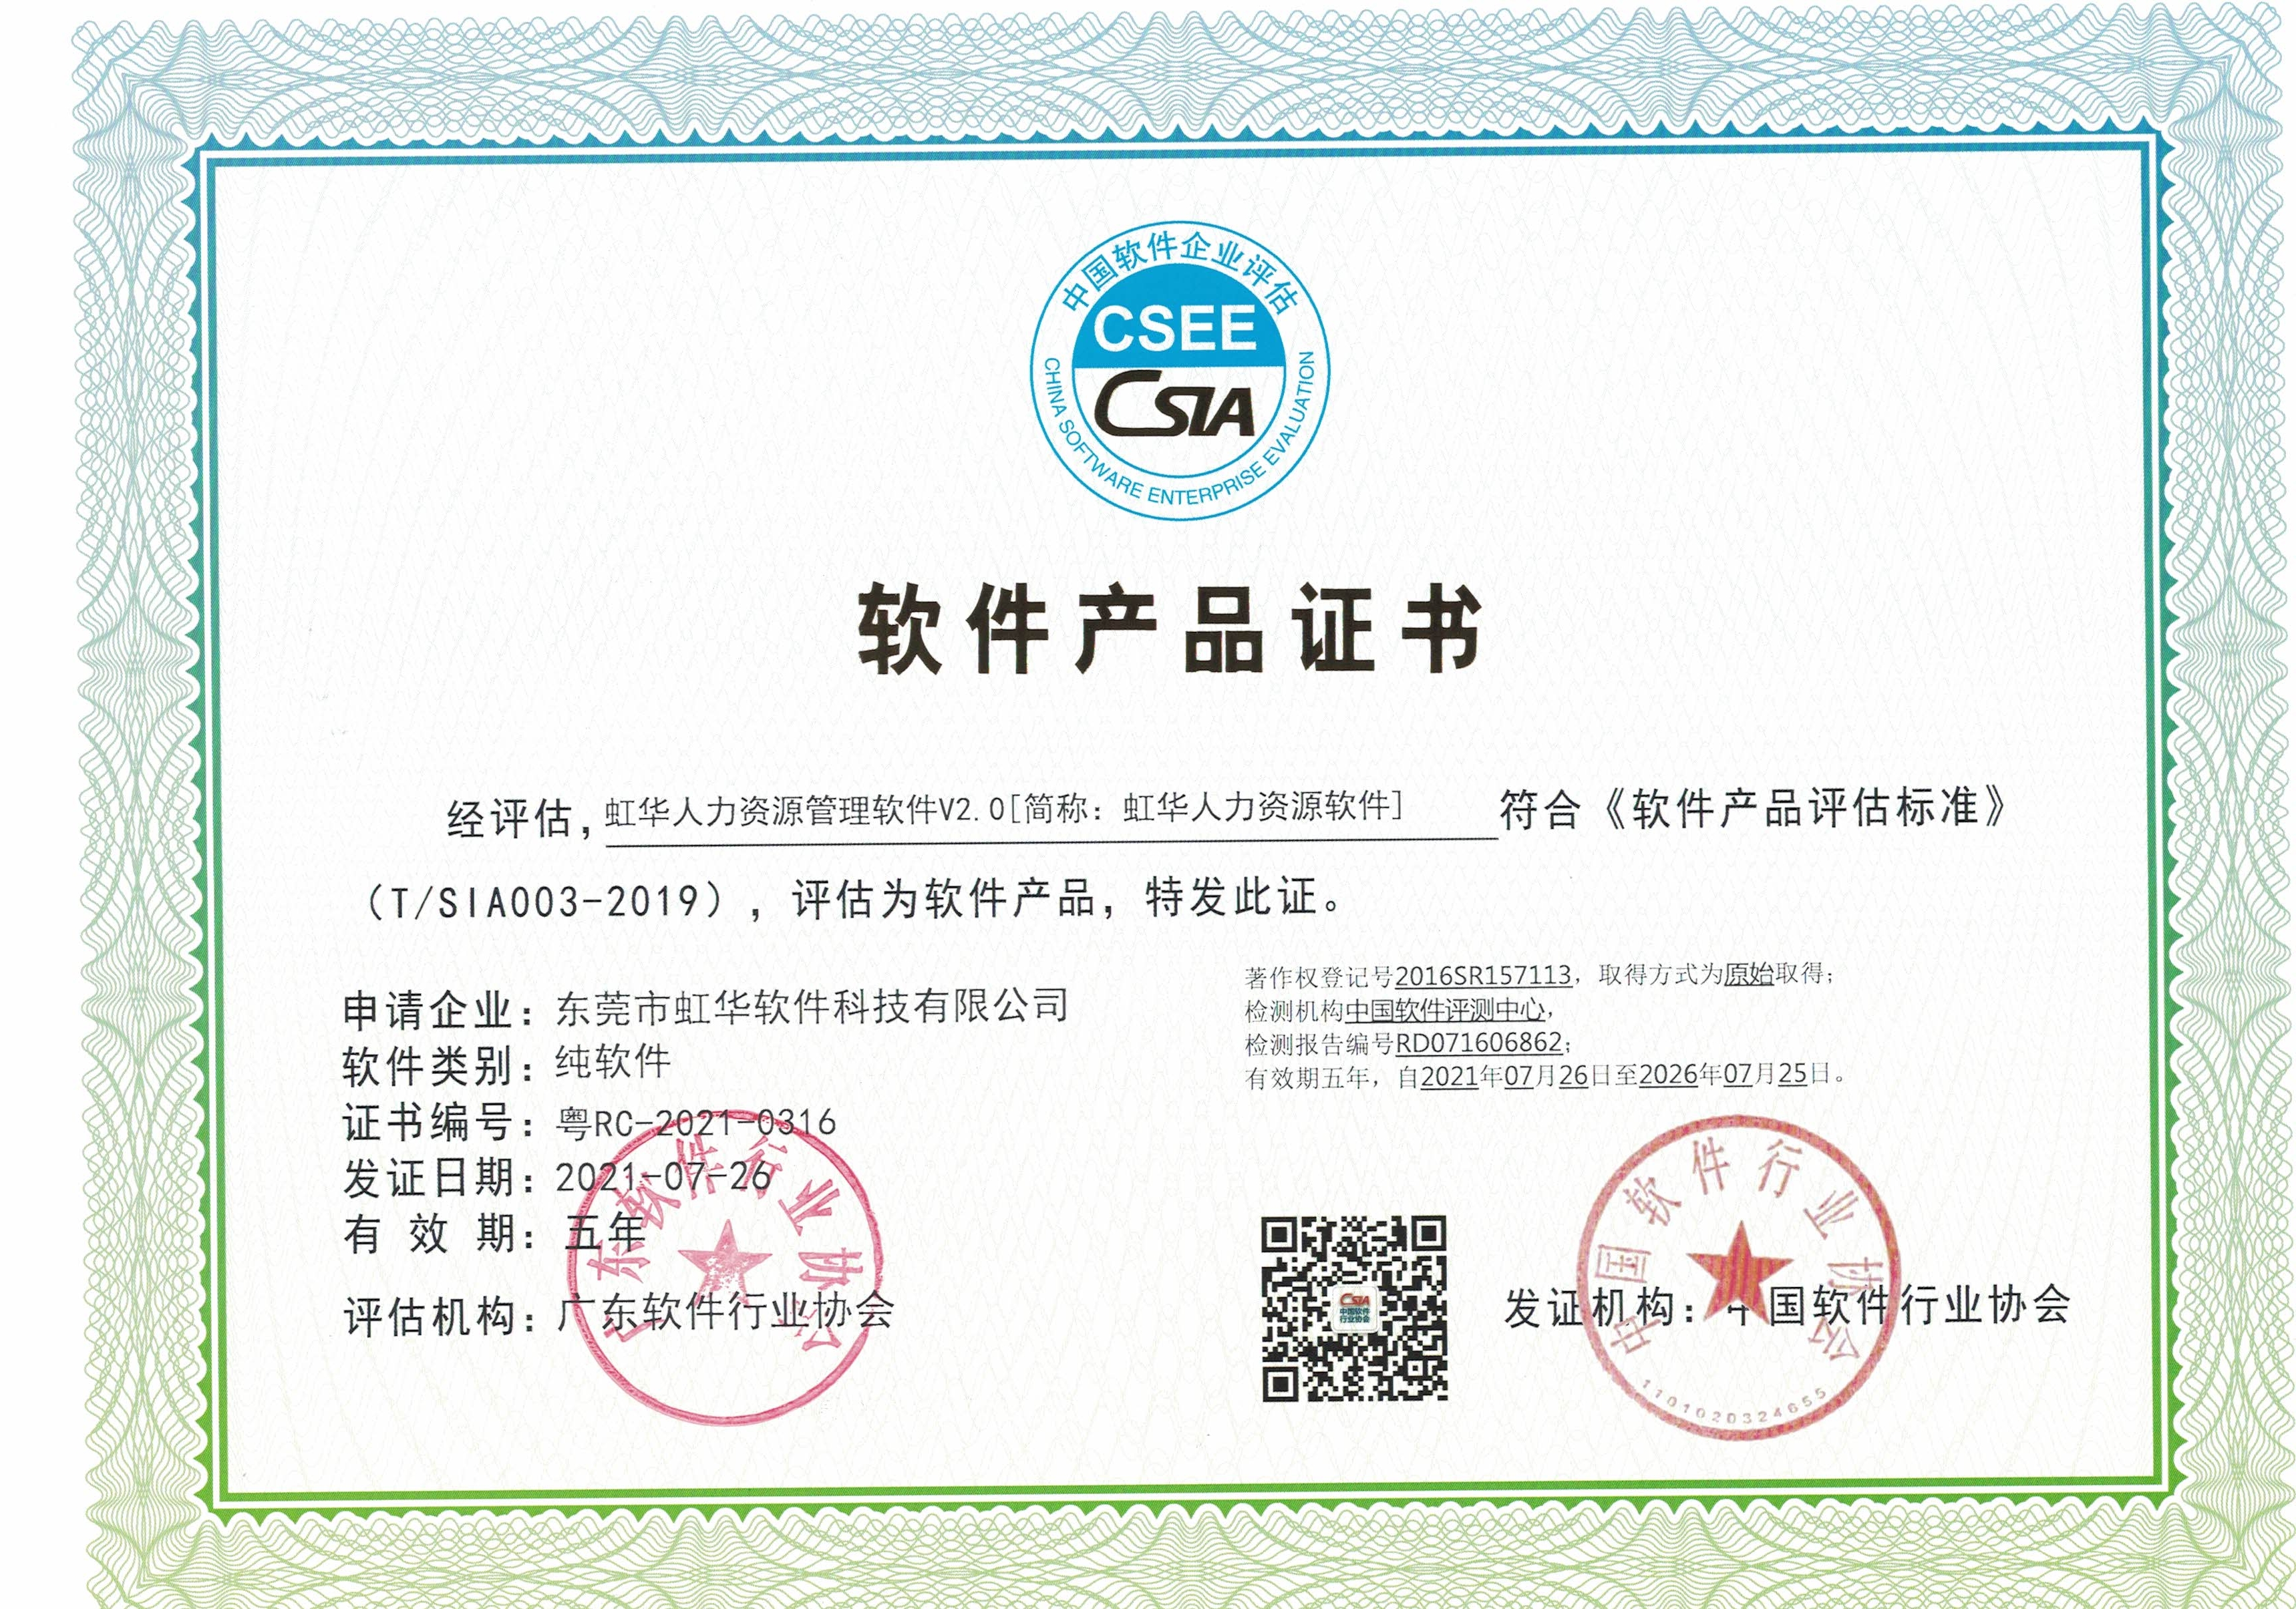 中國軟件企業評估聯盟軟件產品證書